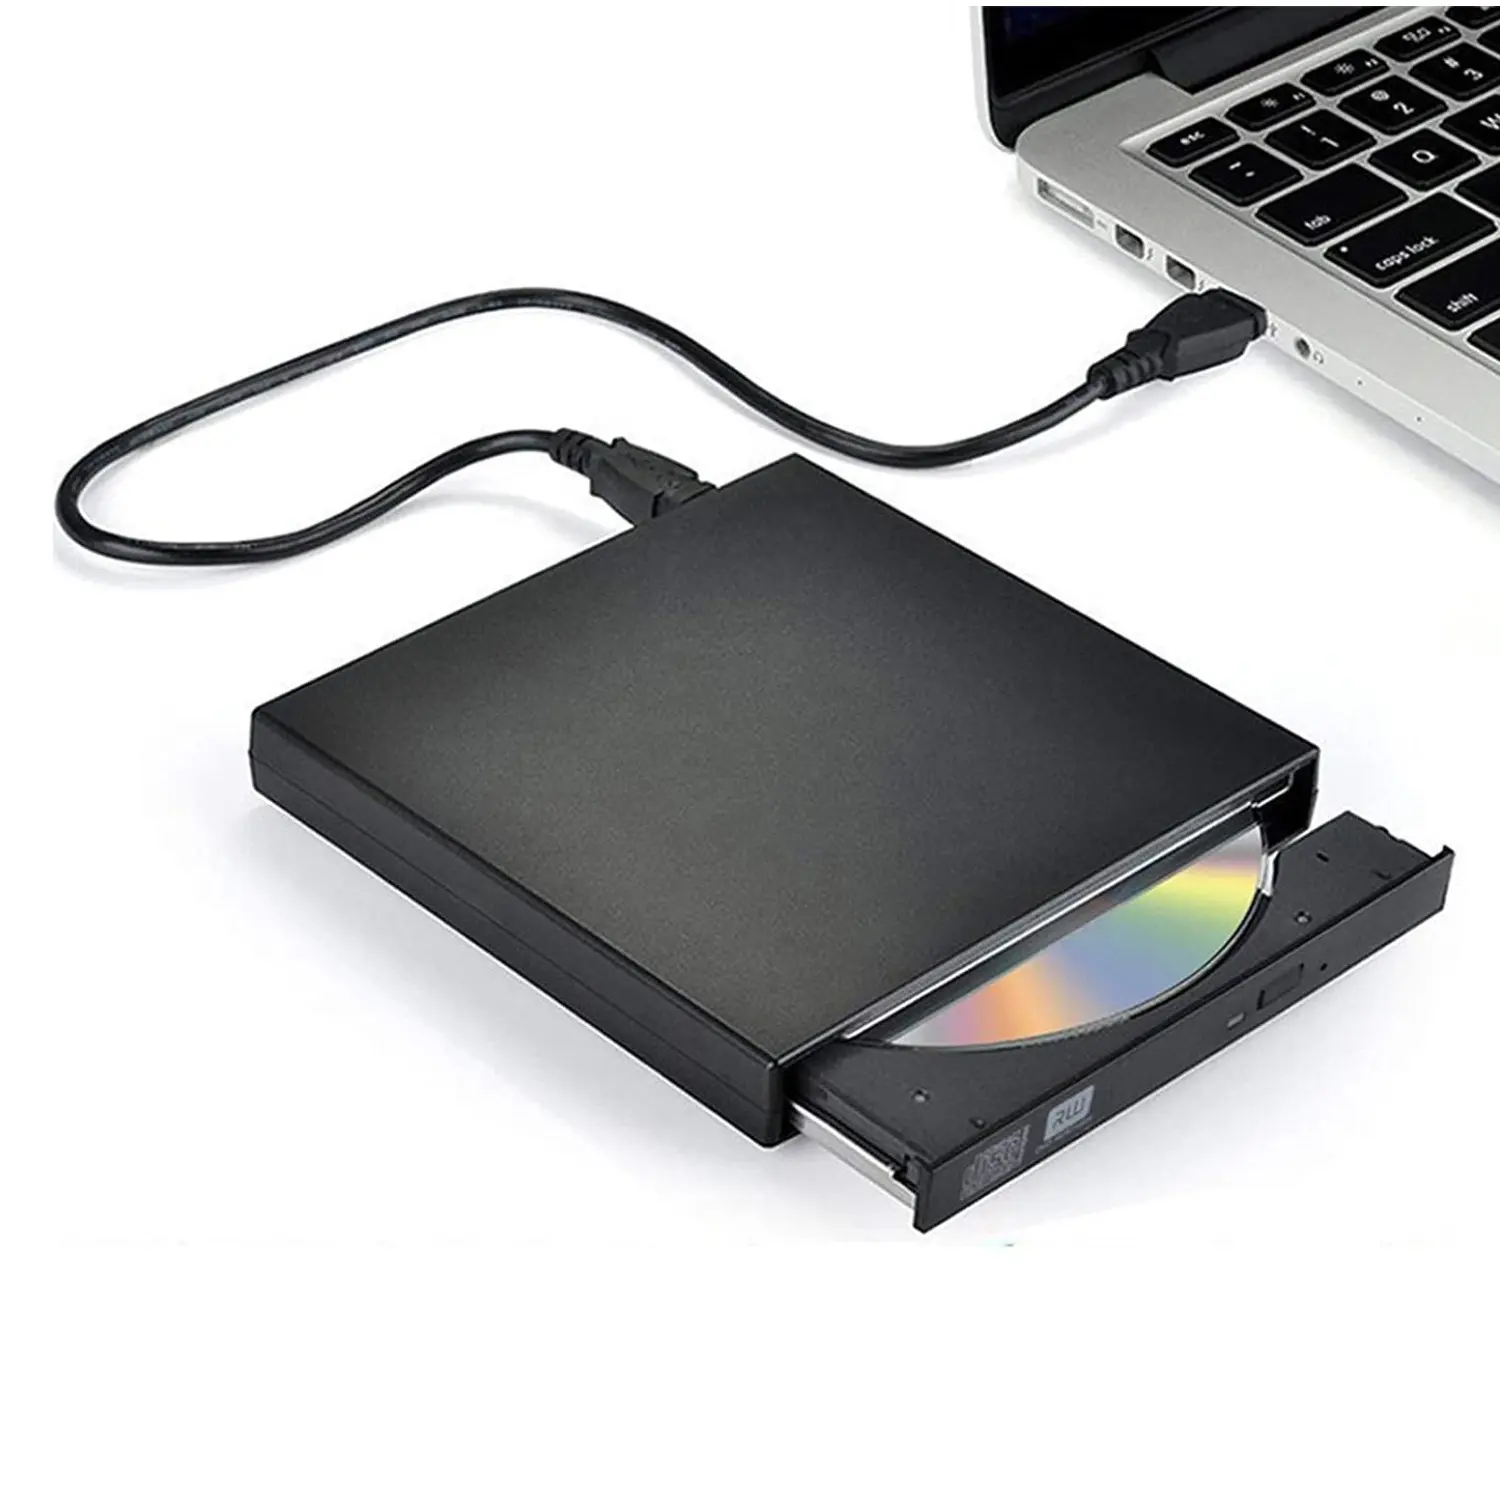 Externe CD DVD Drive, USB 2.0 Slim Portable Externe CD-RW Lecteur DVD-RW Brûleur Écrivain Lecteur pour PC Portable PC De Bureau etc